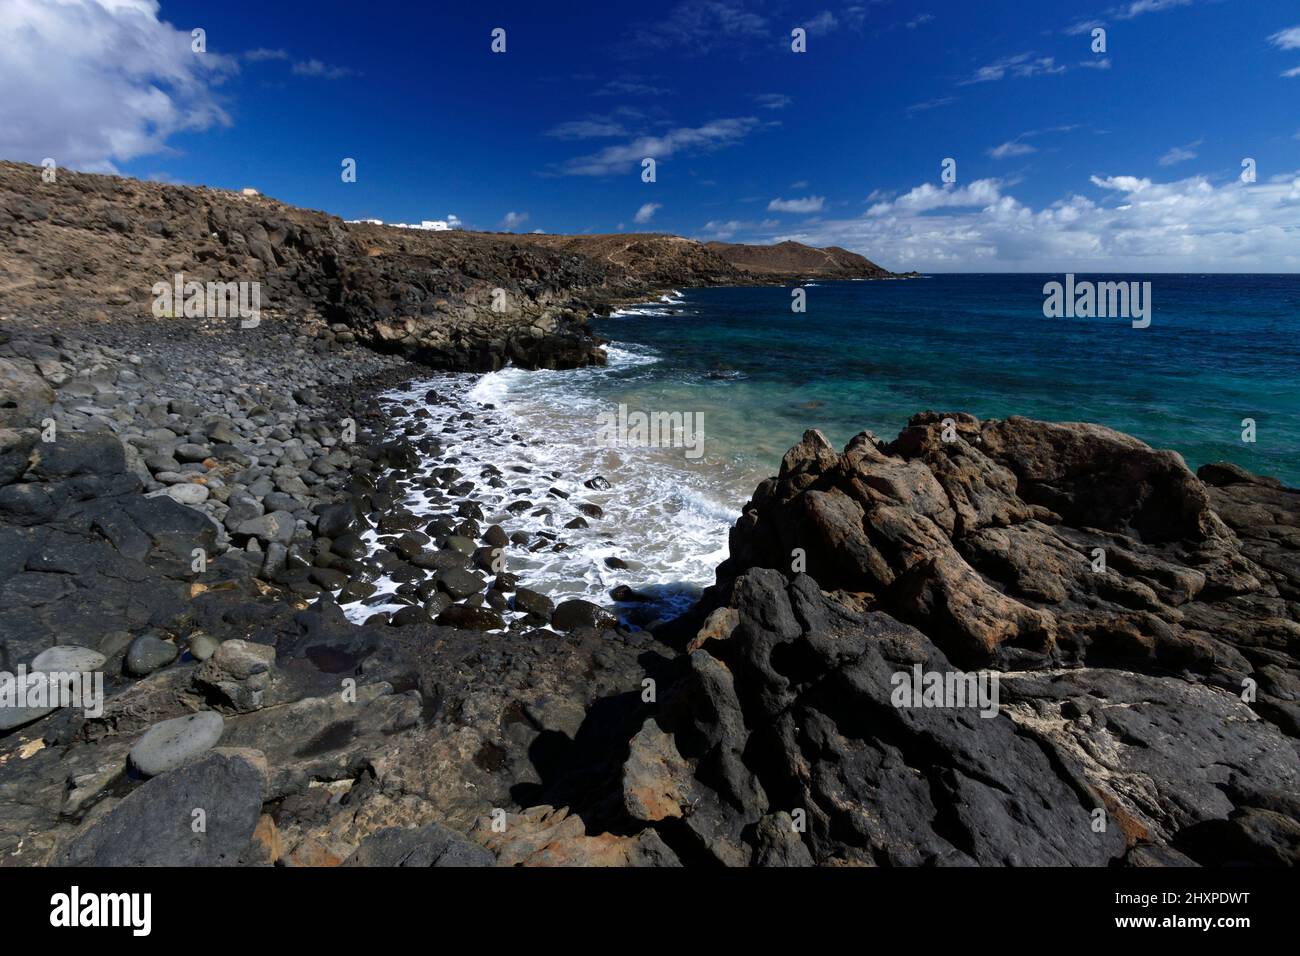 Coast near Los Ancones, Costa Teguise, Lanzarote, Canary Islands, Spain. Stock Photo